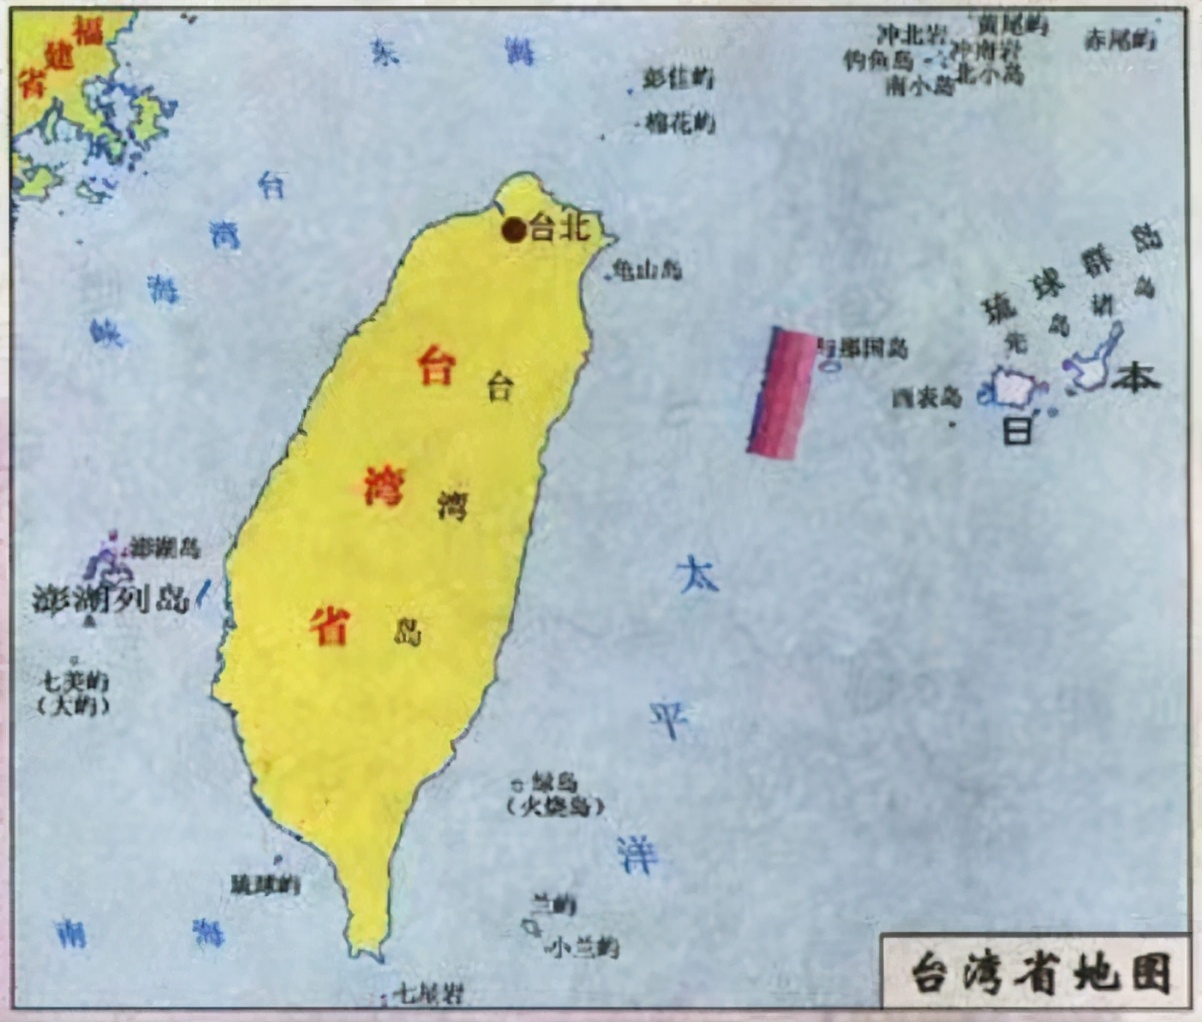 兩件大事：日本公開表態將插手台灣問題，中國航母編隊或首次繞台